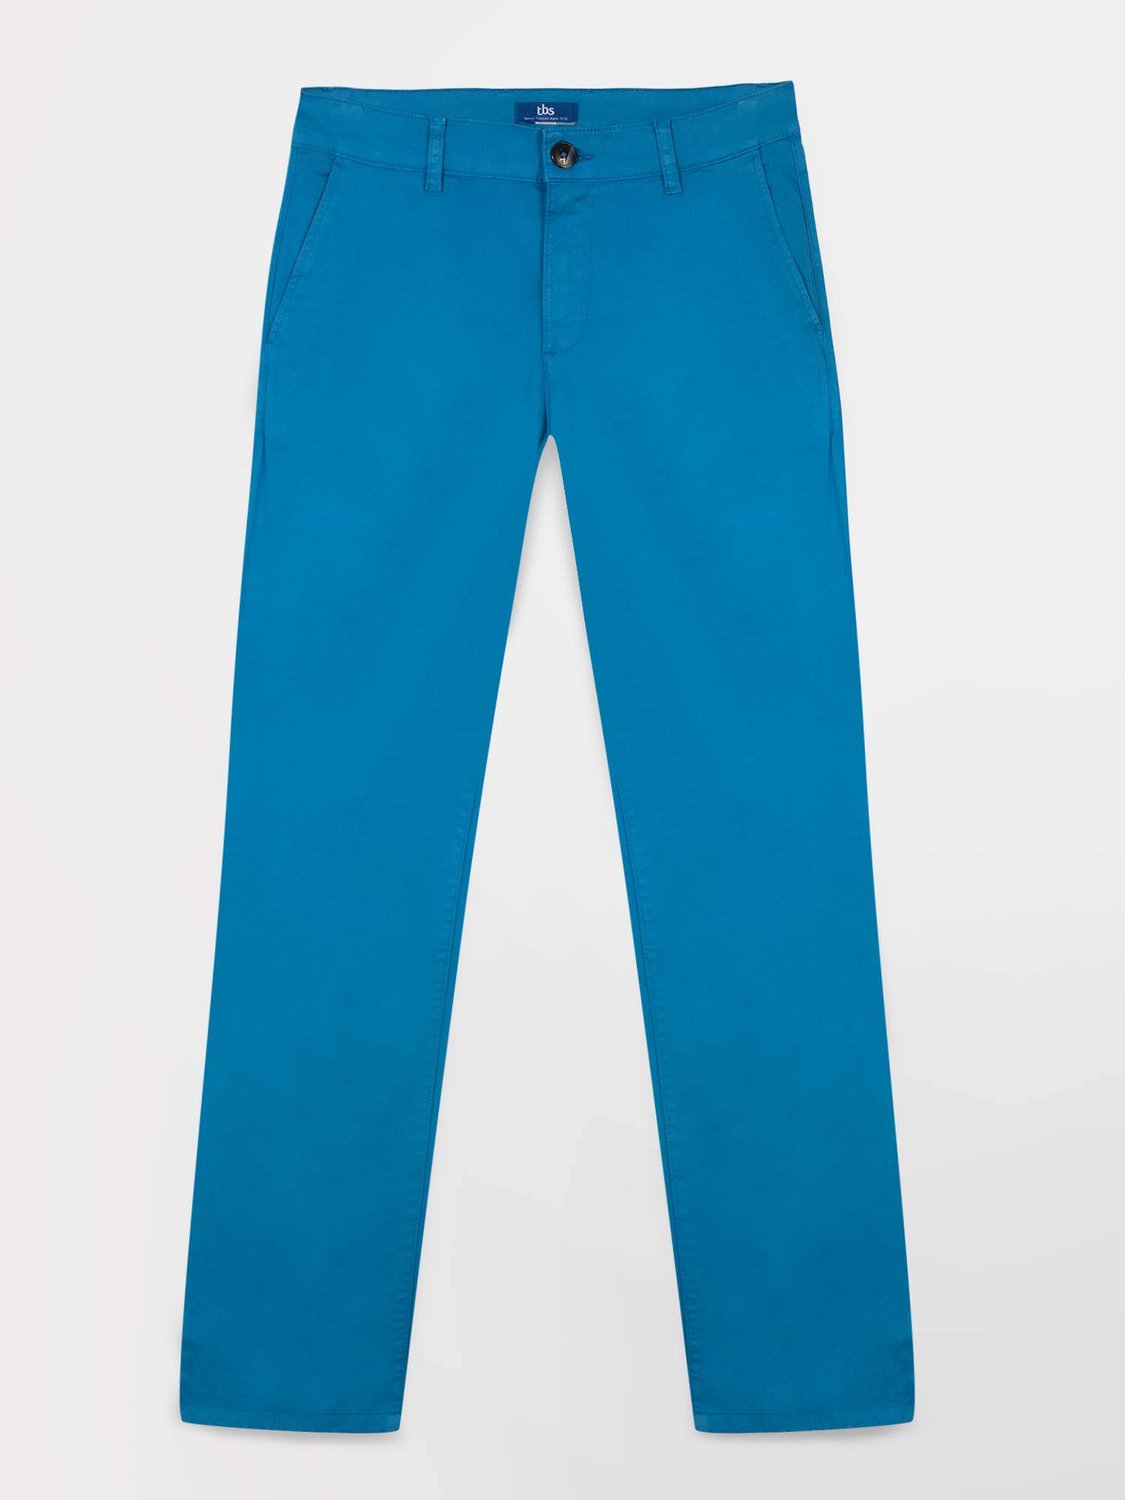 Pantalon Chino Homme Coton Stretch Bleu